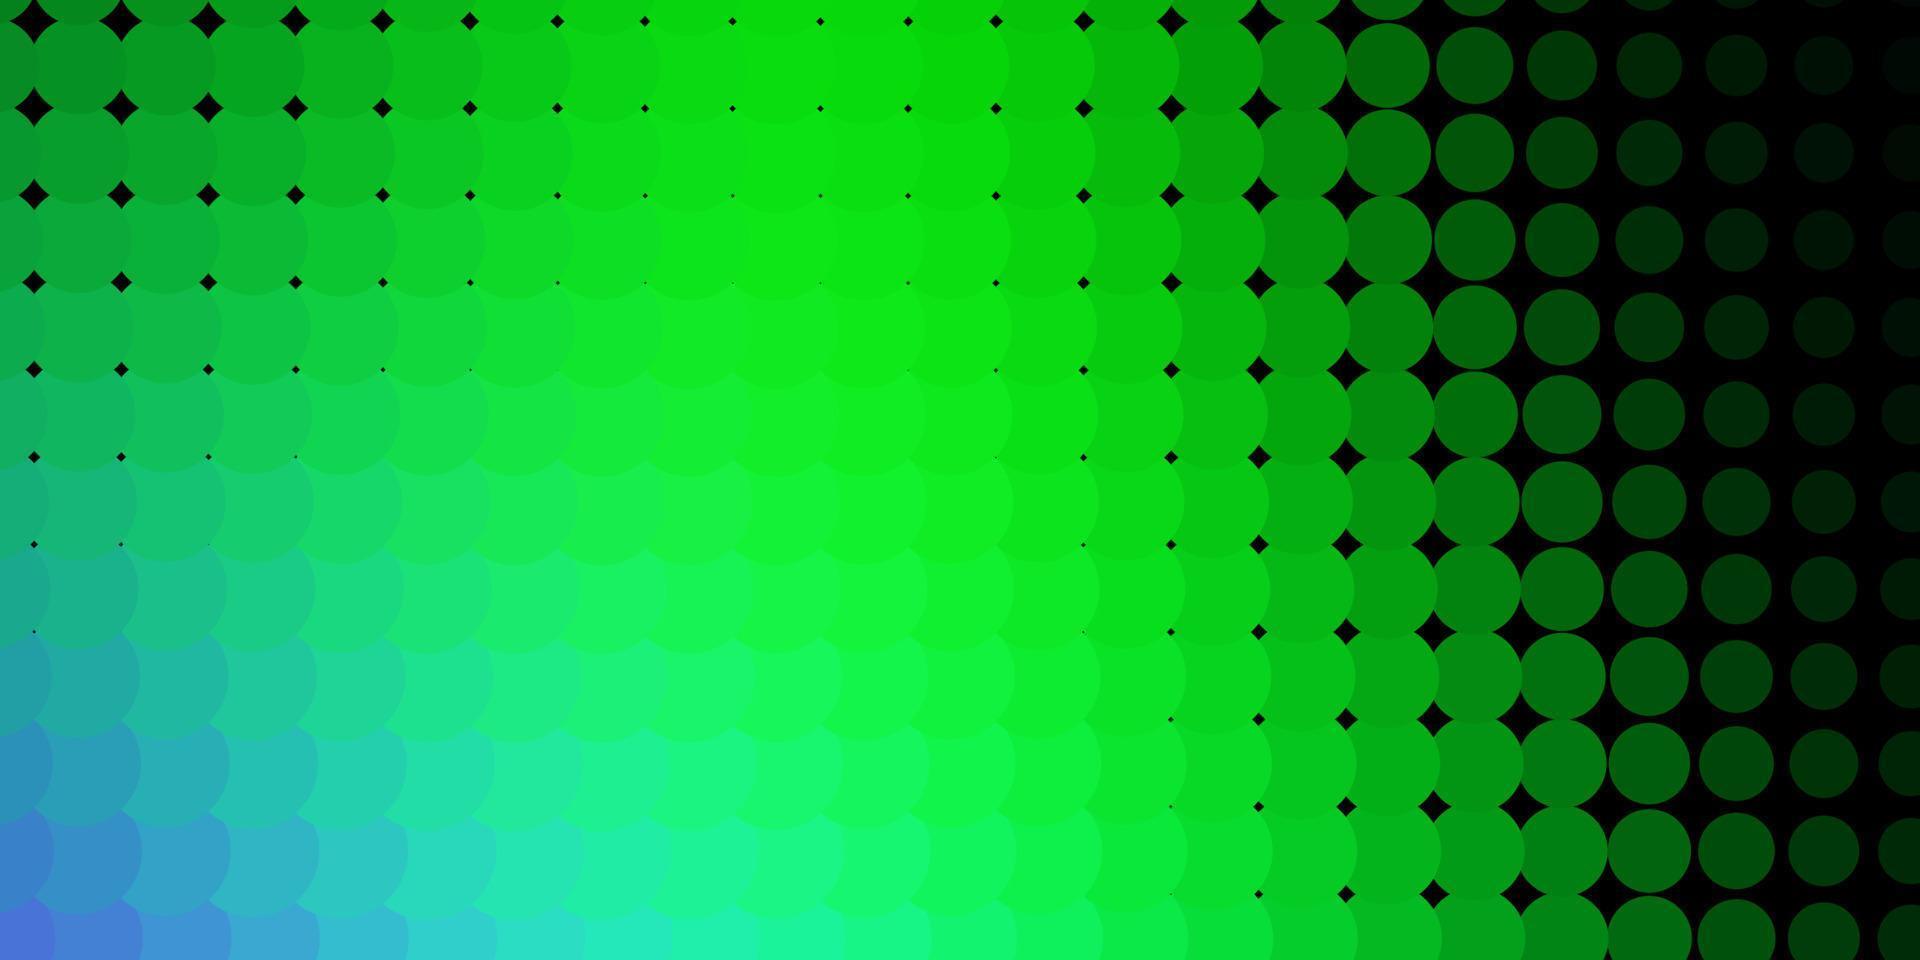 ljusrosa, grön vektorlayout med cirkelformer. vektor